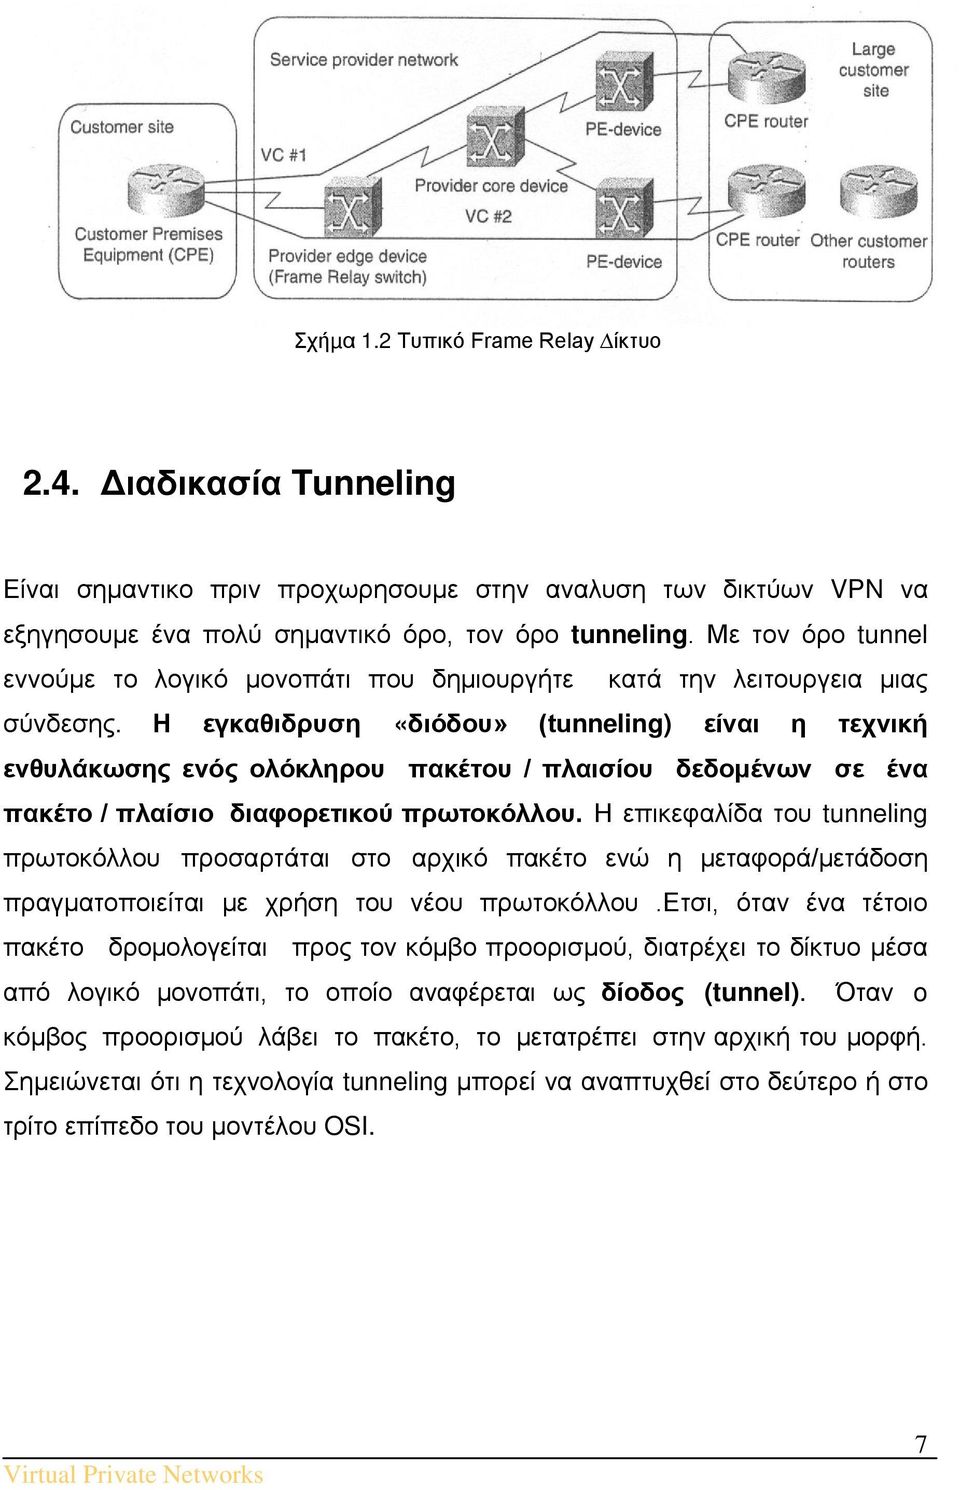 Η εγκαθιδρυση «διόδου» (tunneling) είναι η τεχνική ενθυλάκωσης ενός ολόκληρου πακέτου / πλαισίου δεδομένων σε ένα πακέτο / πλαίσιο διαφορετικού πρωτοκόλλου.